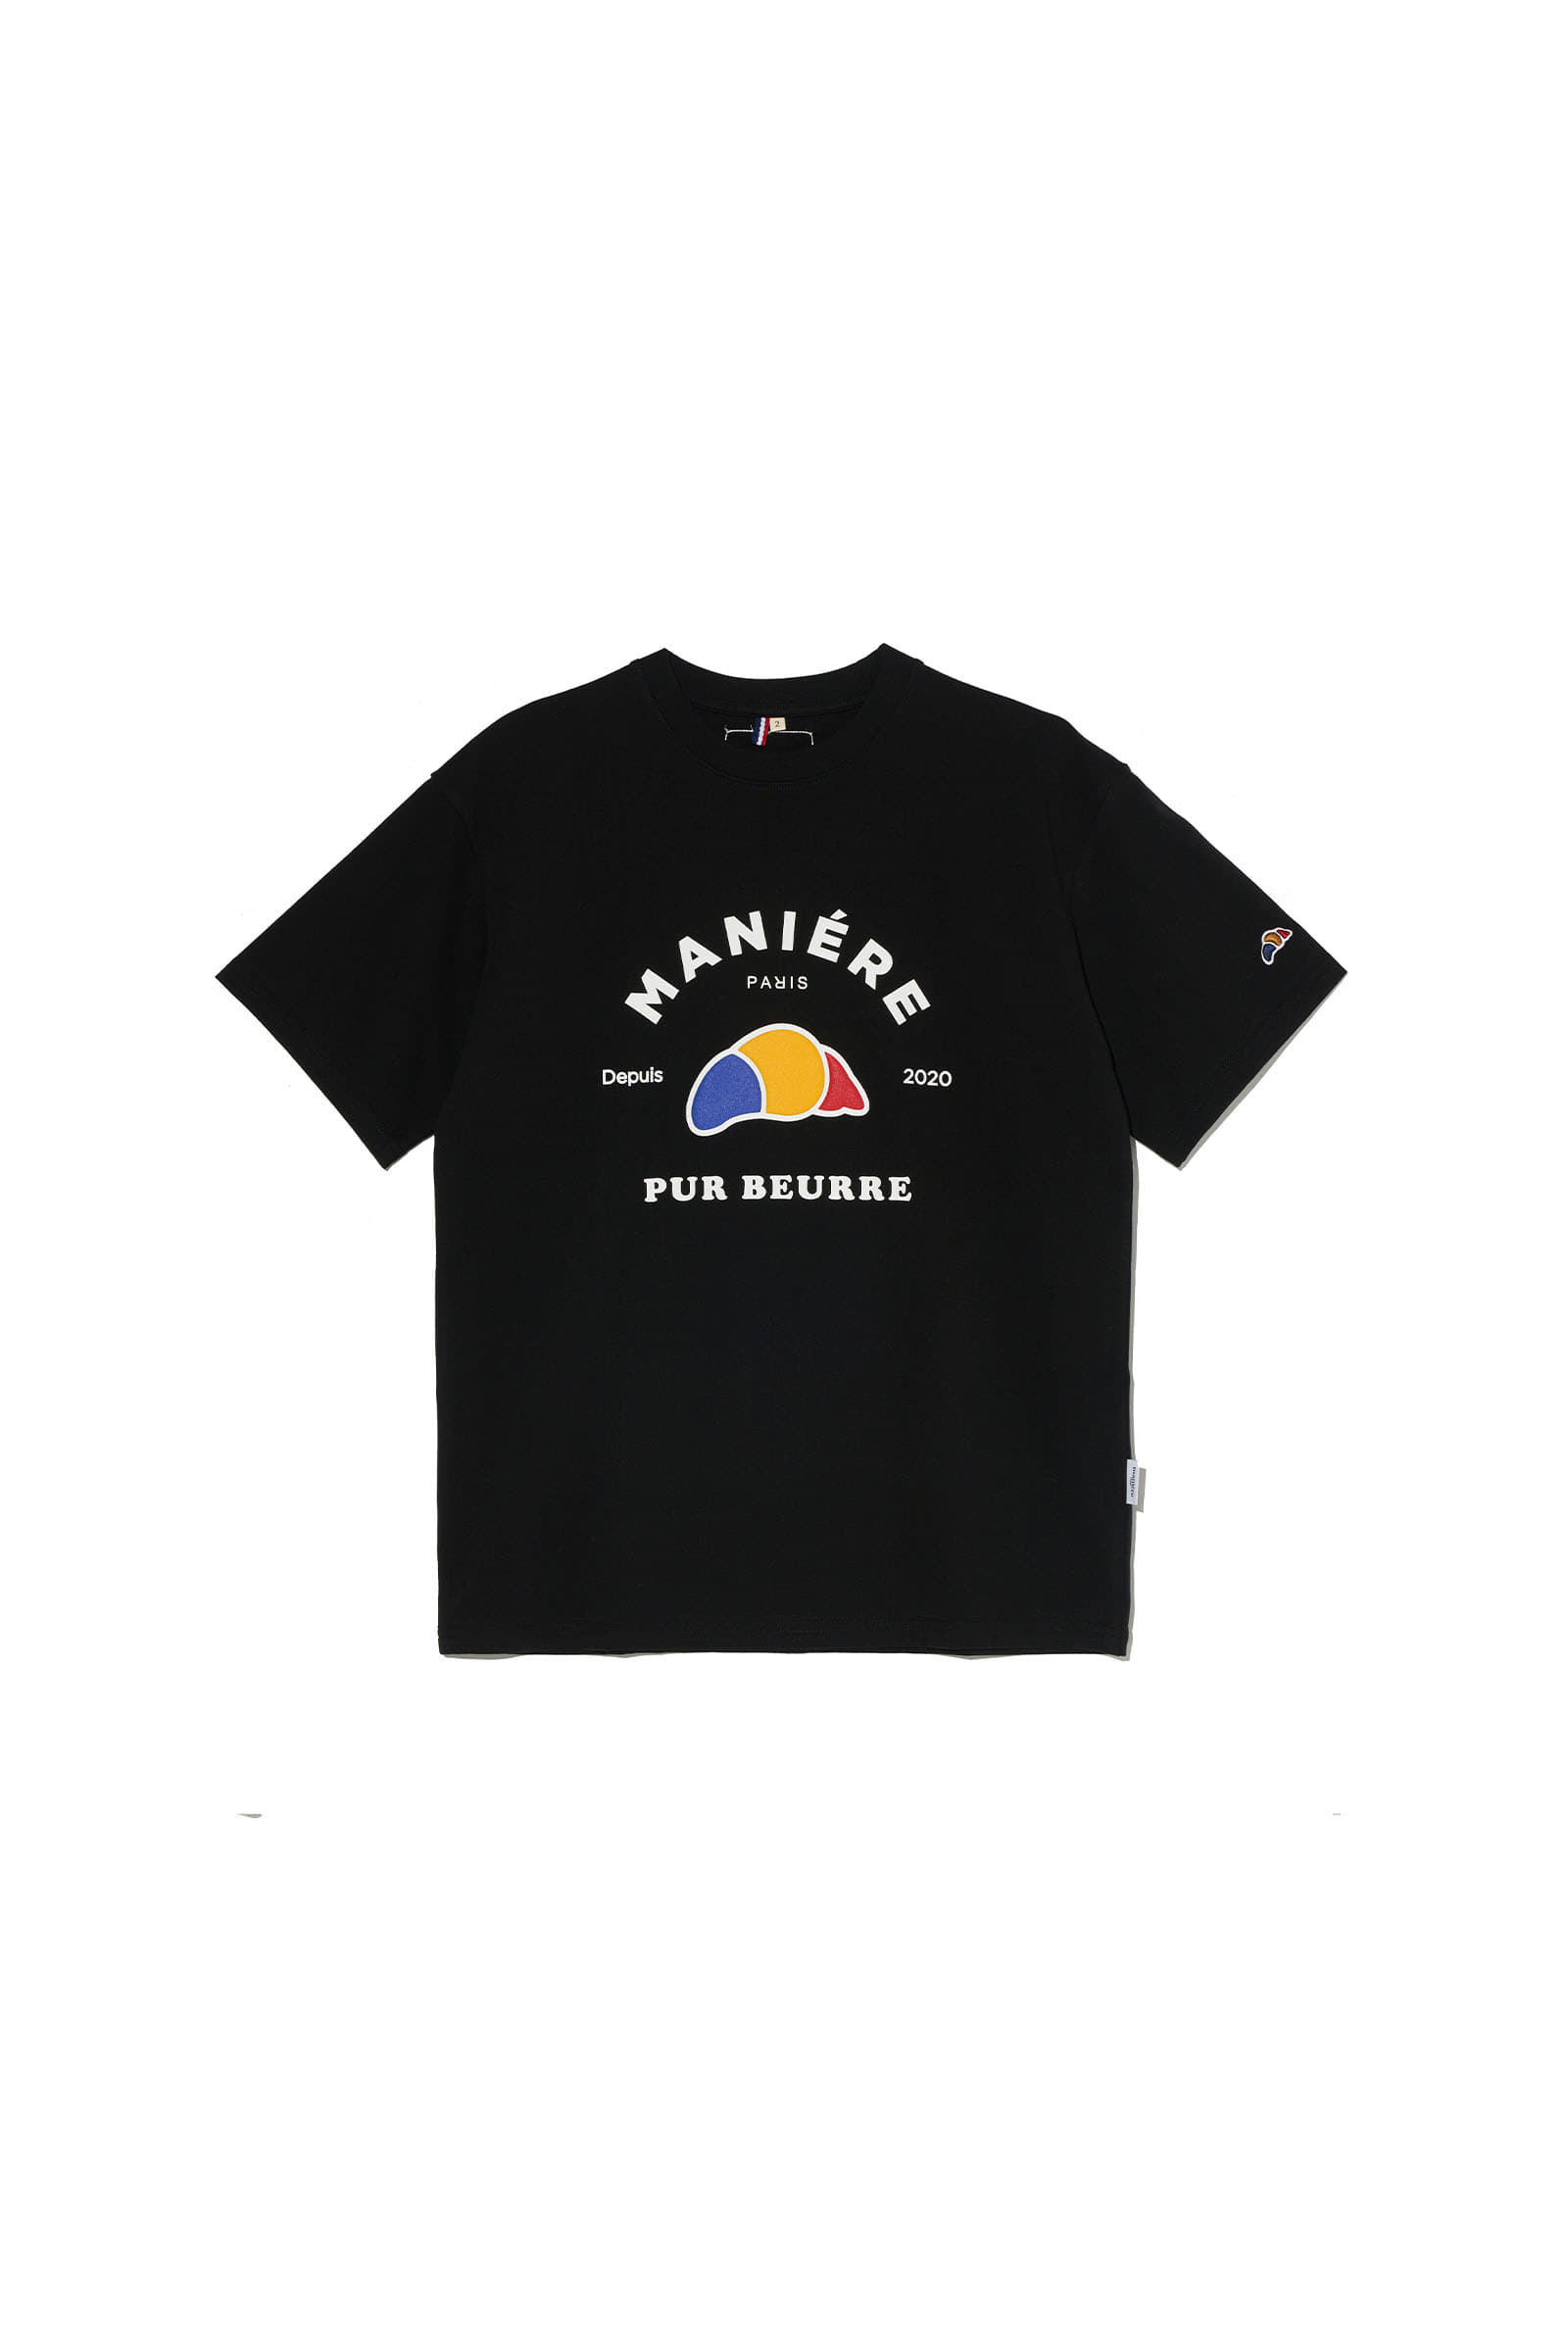 ep.6 Croissant patch T-shirts (Black)